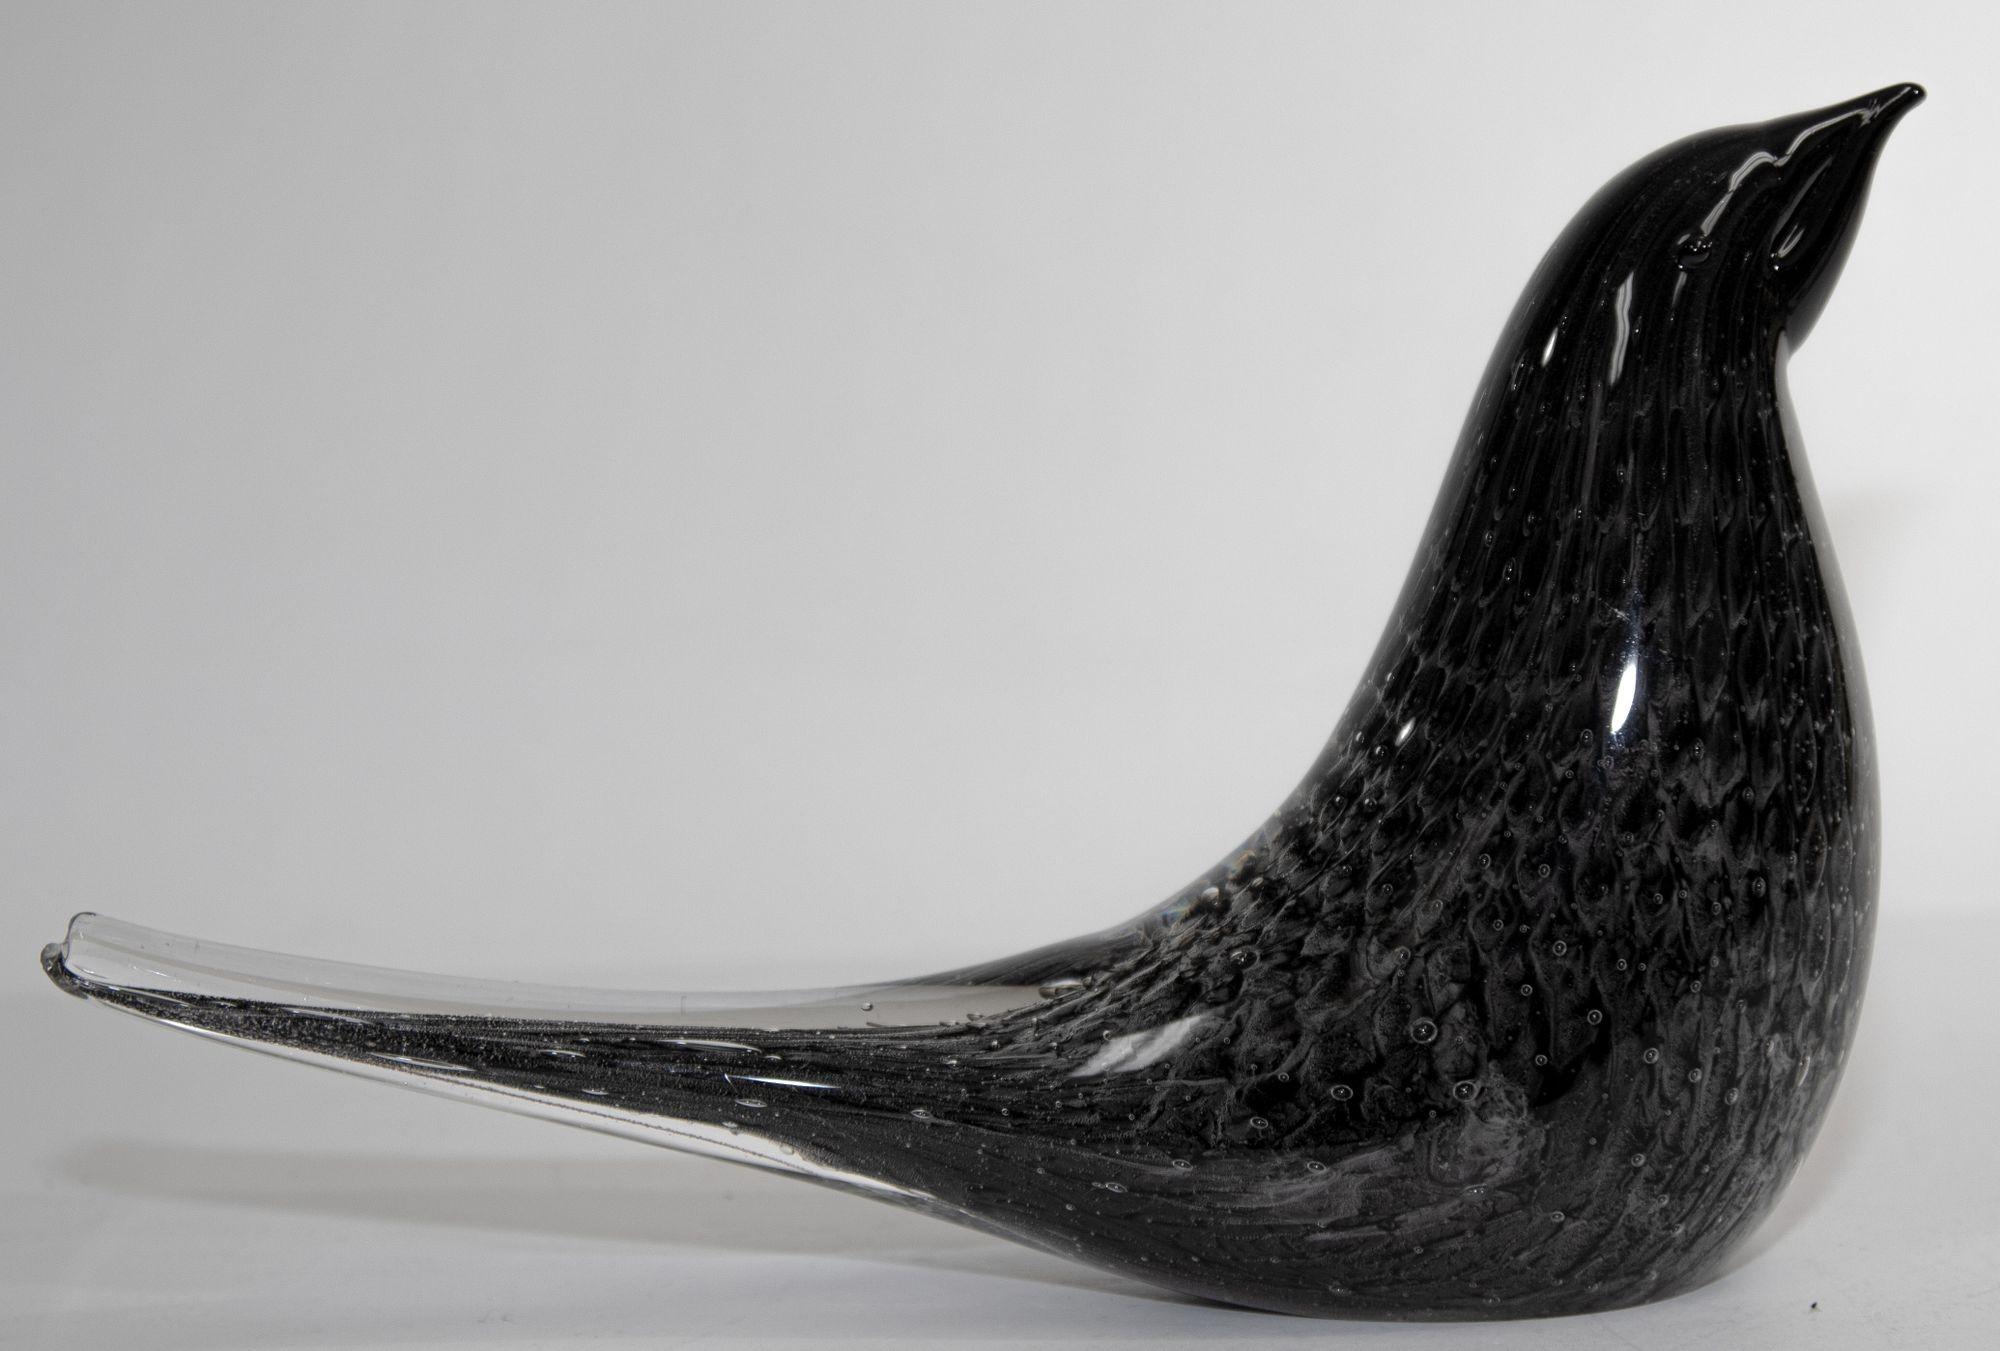 Magnifique oiseau noir en verre Murano moderne du milieu du siècle dernier, en très bon état vintage.
Oiseau en verre de Murano, style Barovier, datant du milieu du siècle dernier.
Magnifique figurine ou presse-papiers en verre soufflé à la main